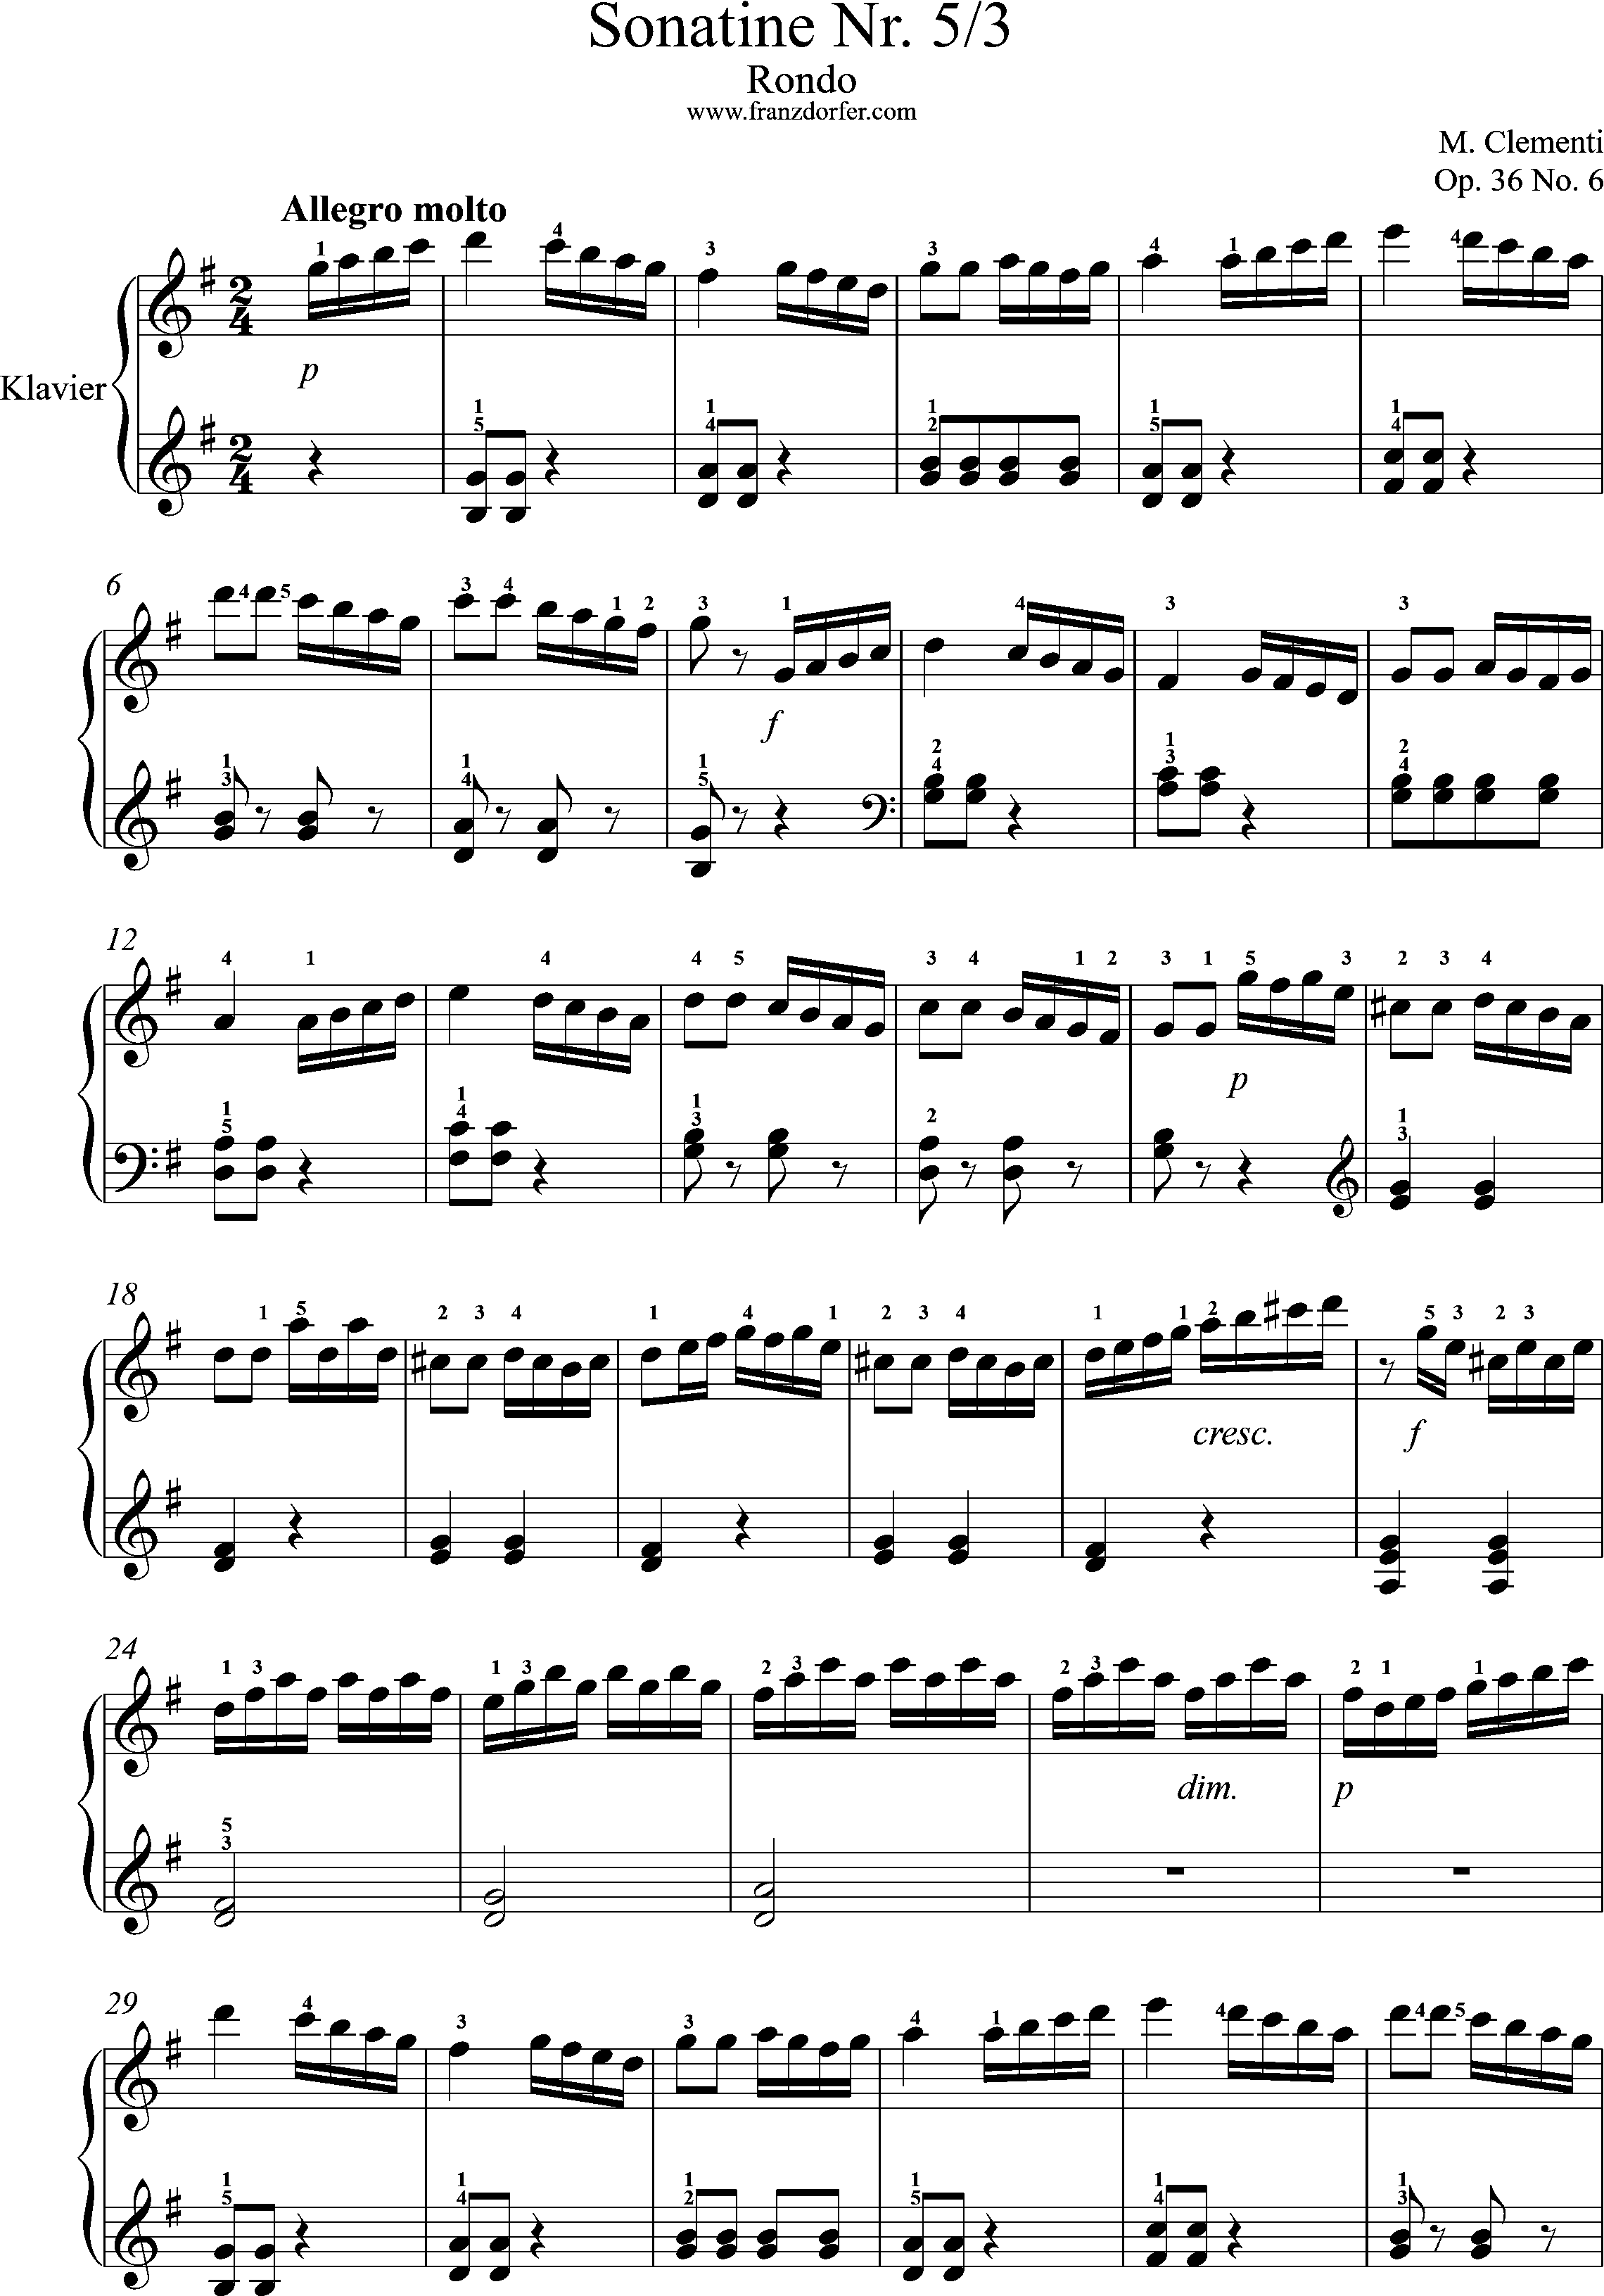 Clementi, op. 36Sonate 5--3.Satz- Rondo - Allegro molto, Seite 1